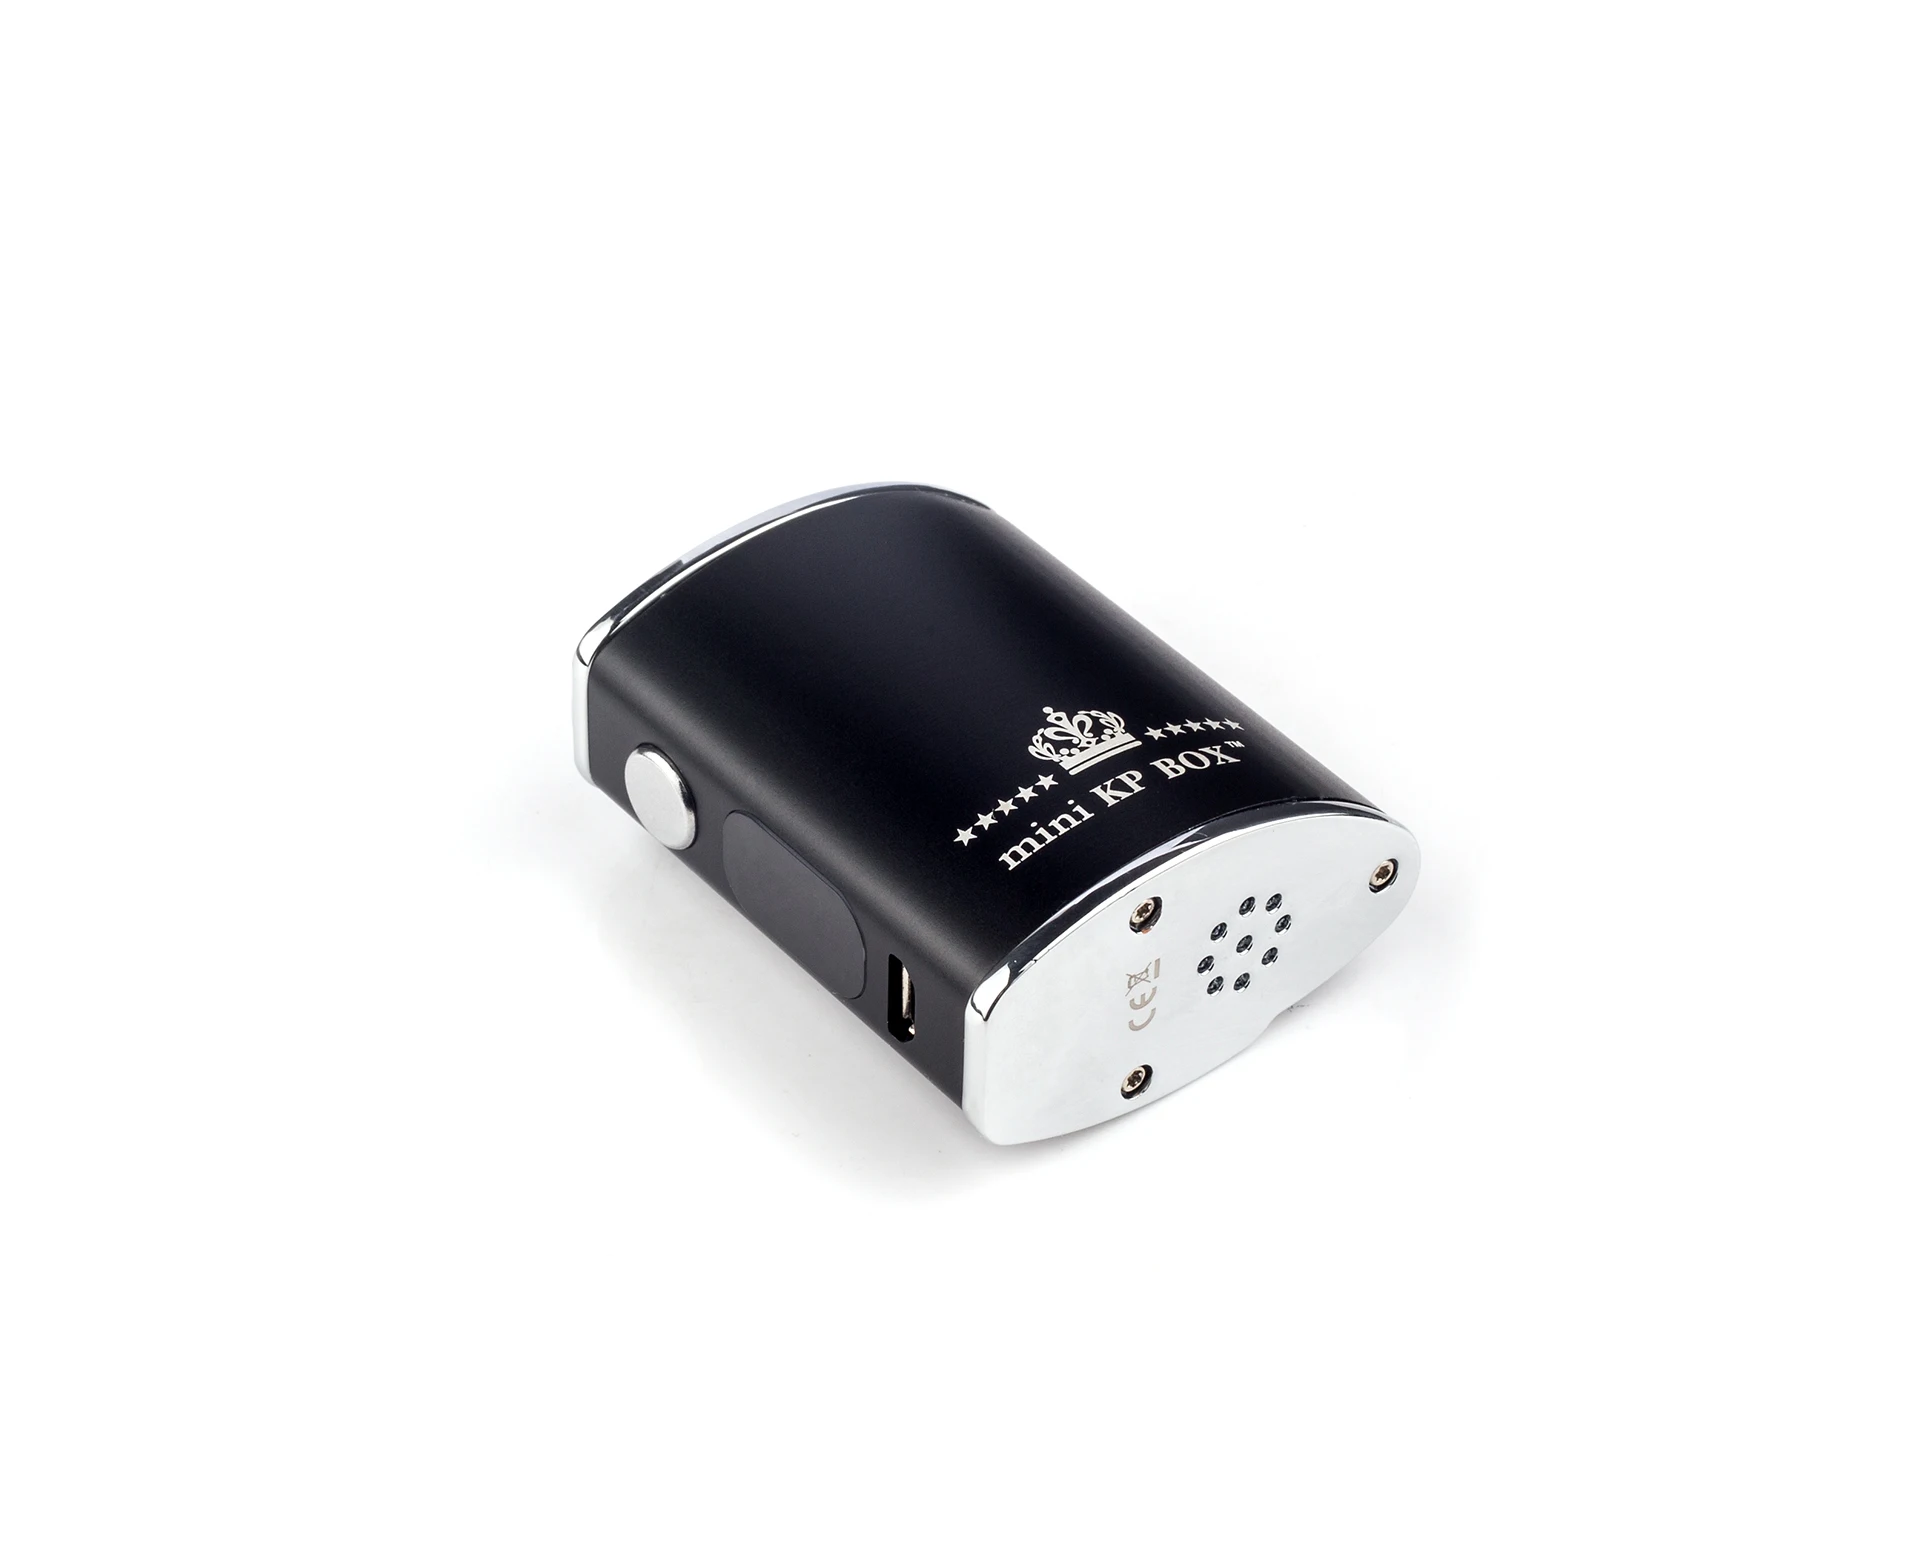 high quality box mod Wholesale Vape pen mini 6 mini Vapor Mod Electronic E-Cigarette GP01 1500mah